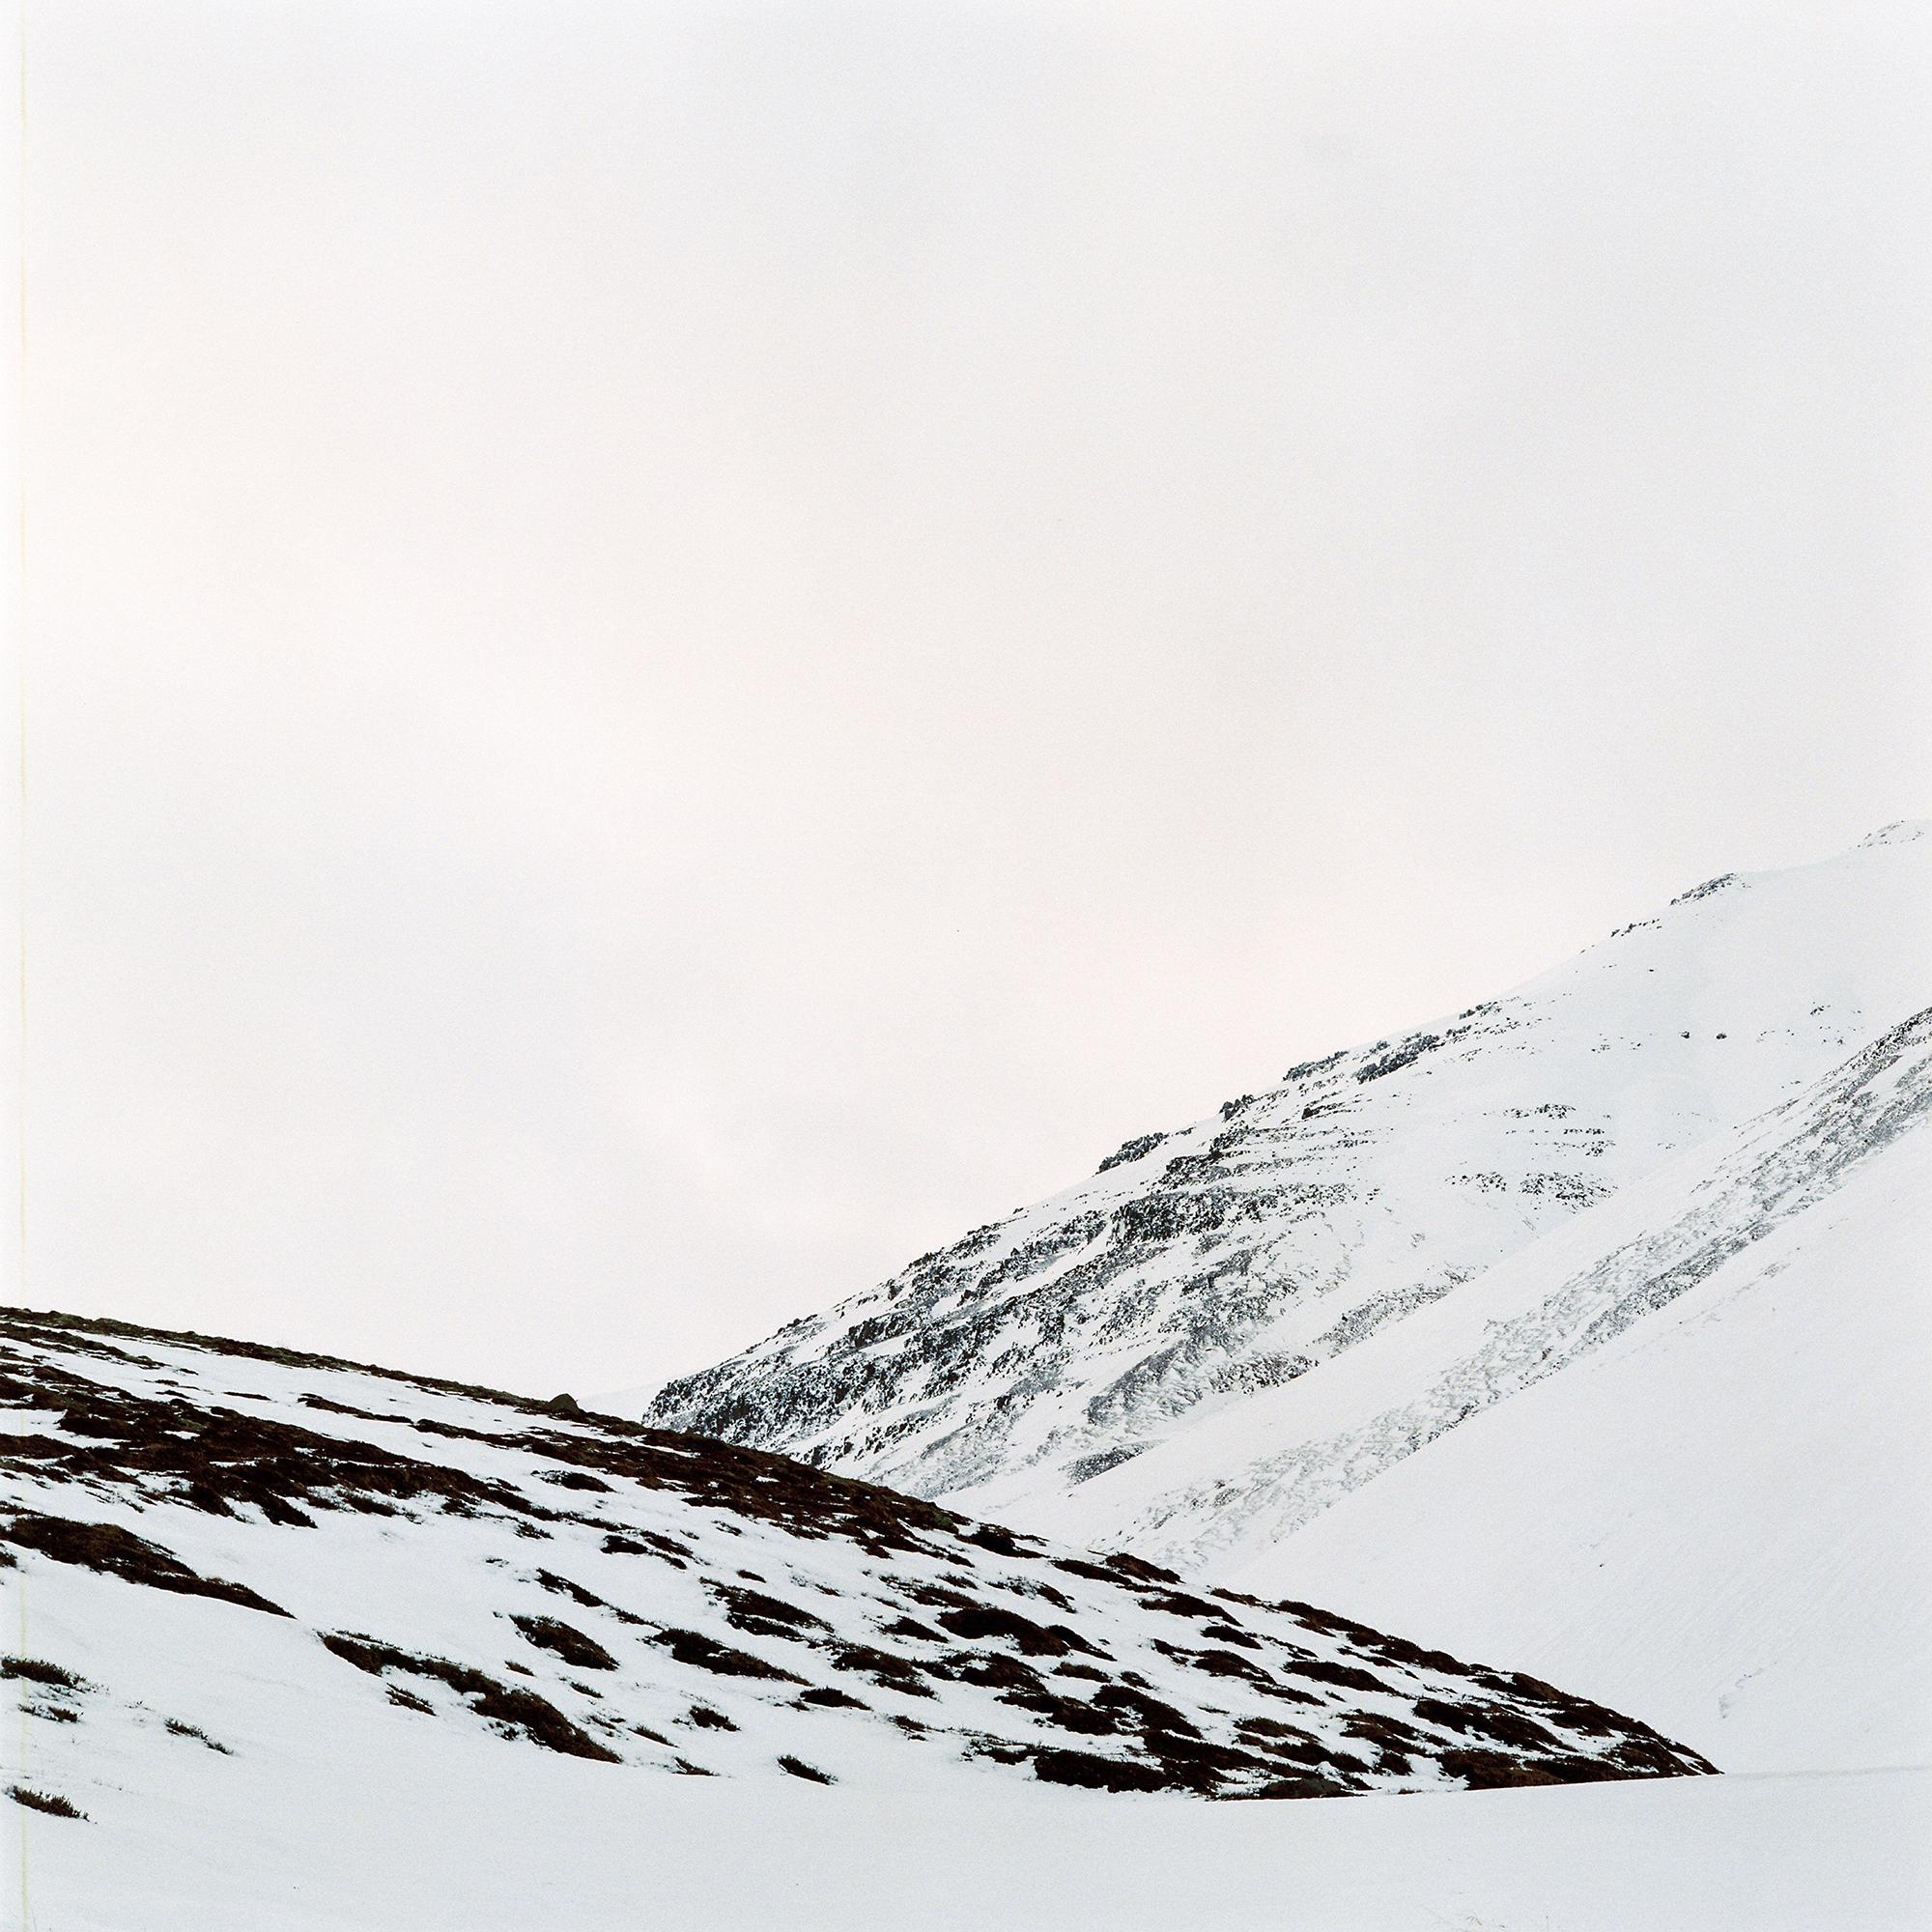 Nils Karlson Landscape Photograph - Unique Particles 9 - 21st Century, Minimalist Landscape photography